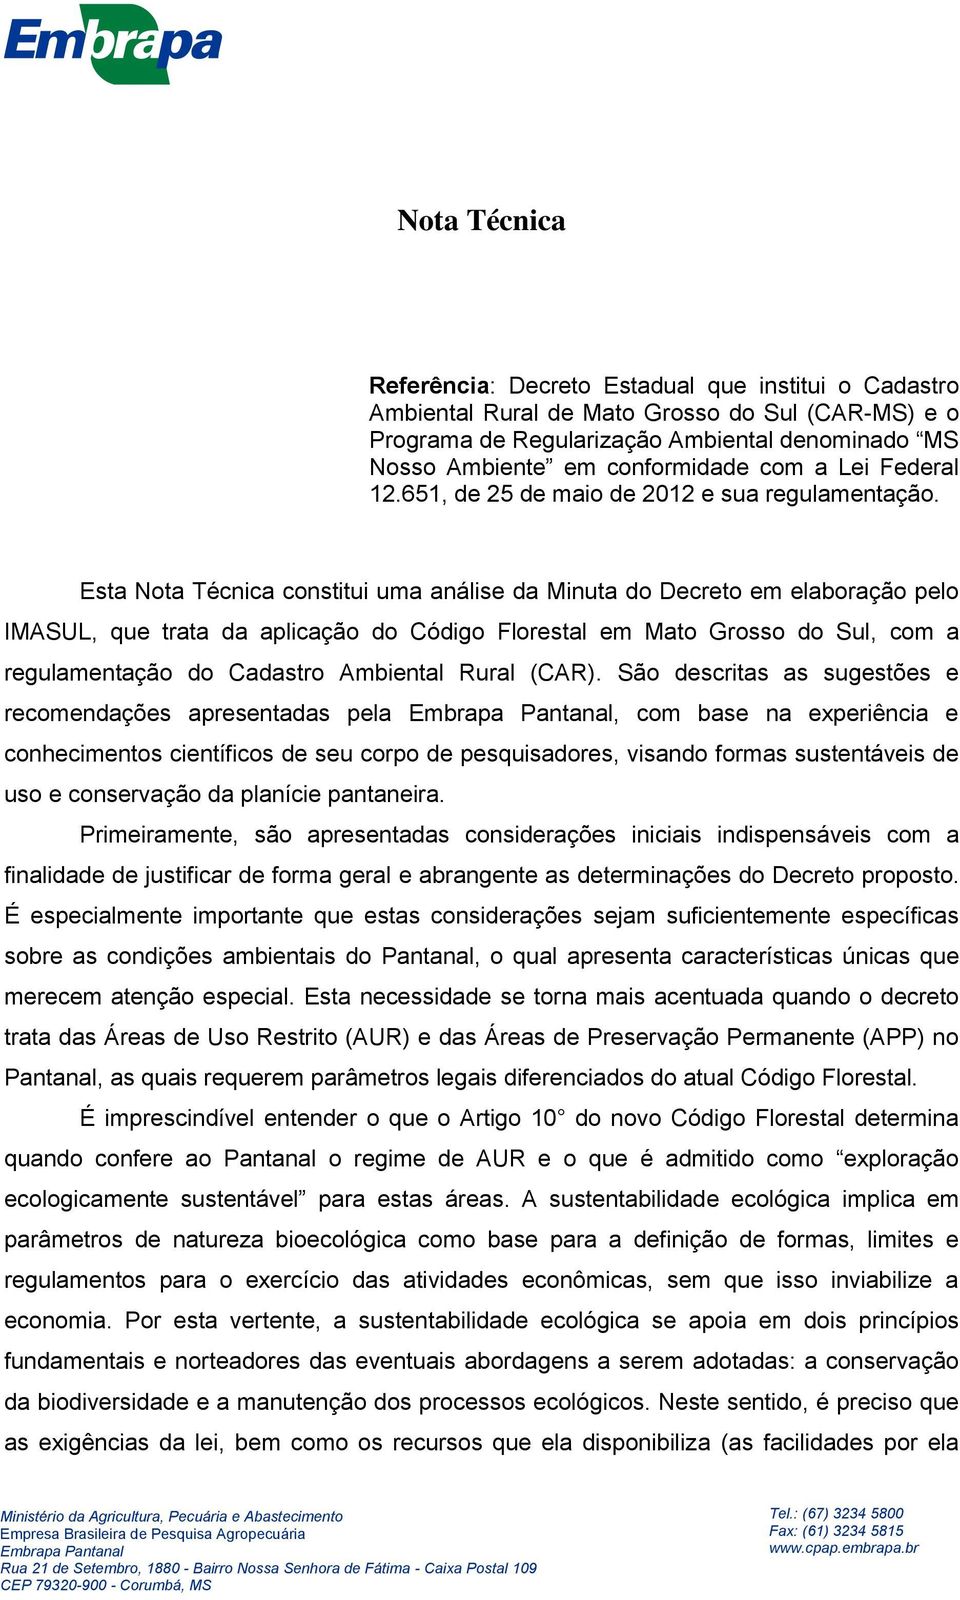 Esta Nota Técnica constitui uma análise da Minuta do Decreto em elaboração pelo IMASUL, que trata da aplicação do Código Florestal em Mato Grosso do Sul, com a regulamentação do Cadastro Ambiental